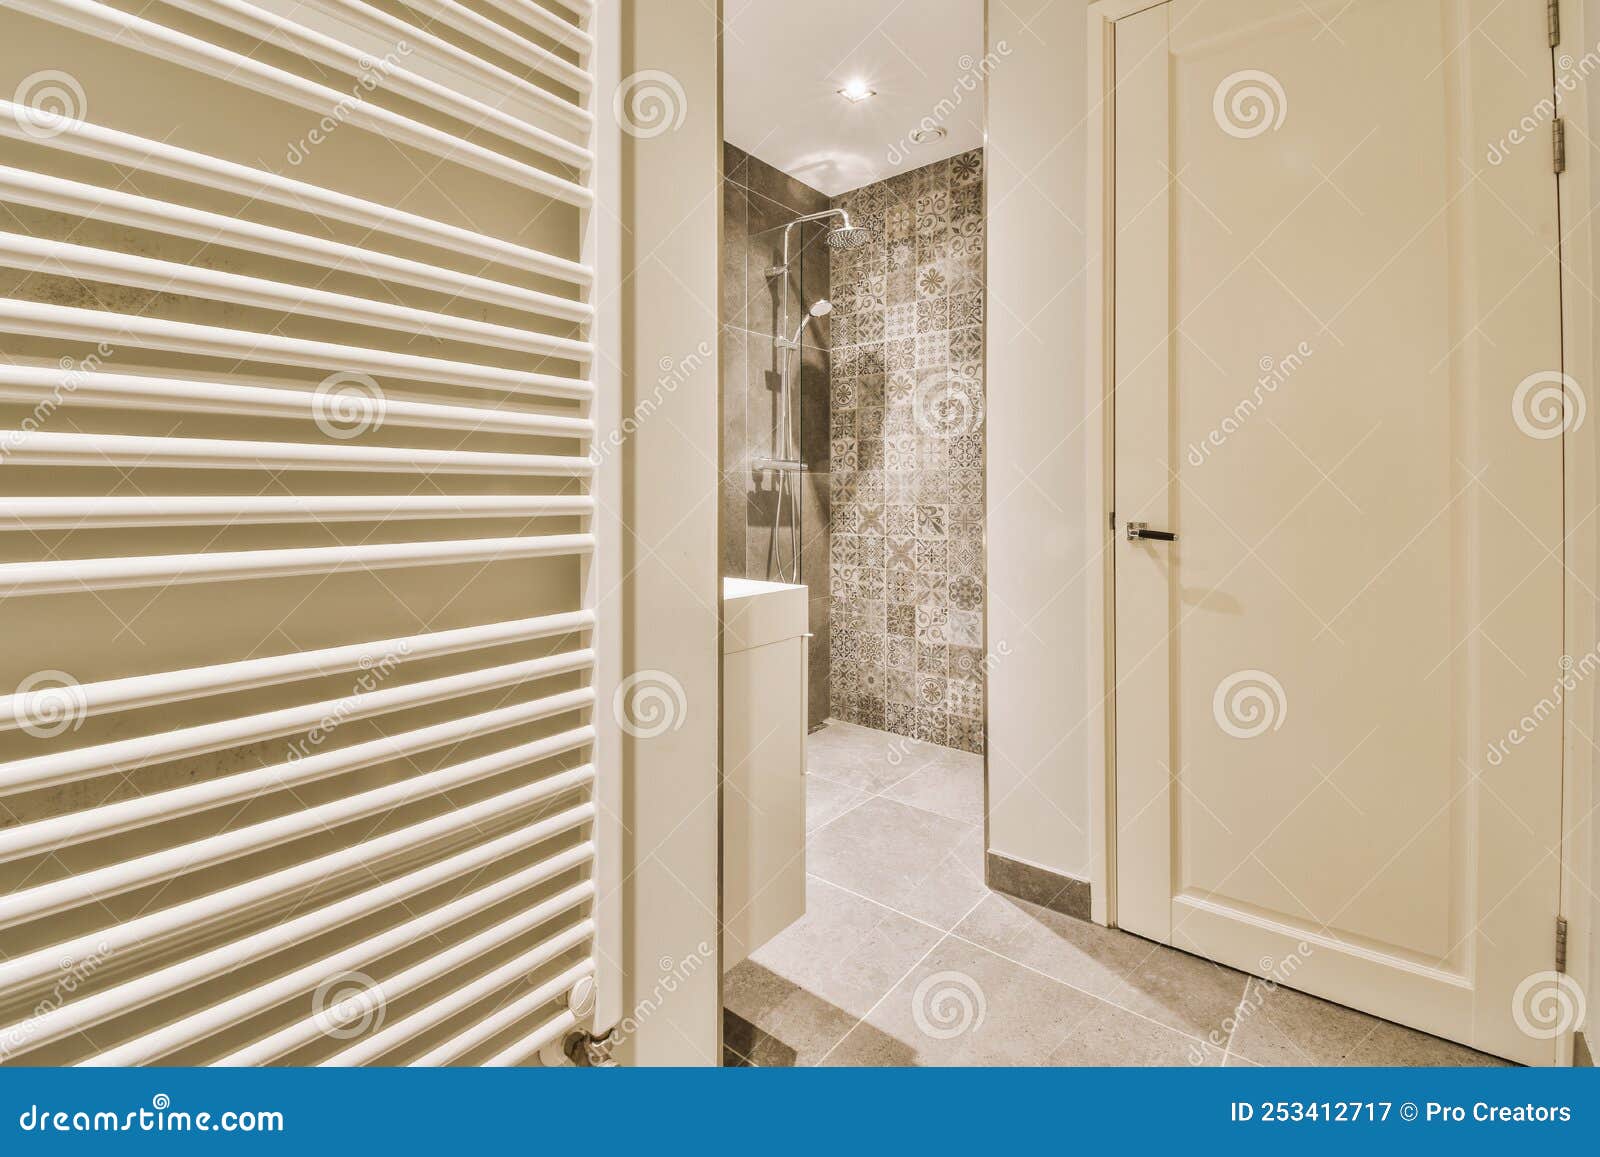 Grifos de ducha pegados a la pared de azulejos cerca de la ventana del baño  en casa